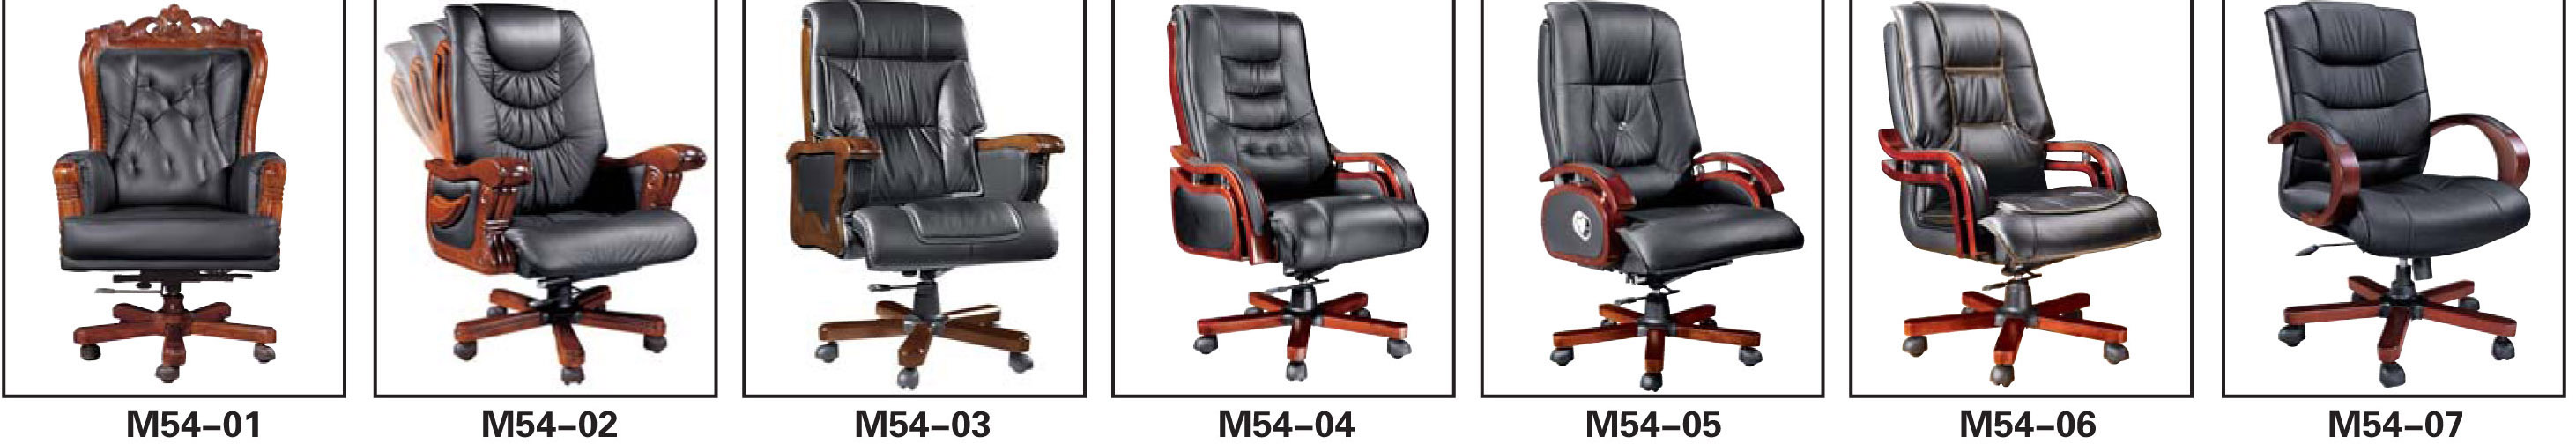 offic chair,Las sillas de oficina